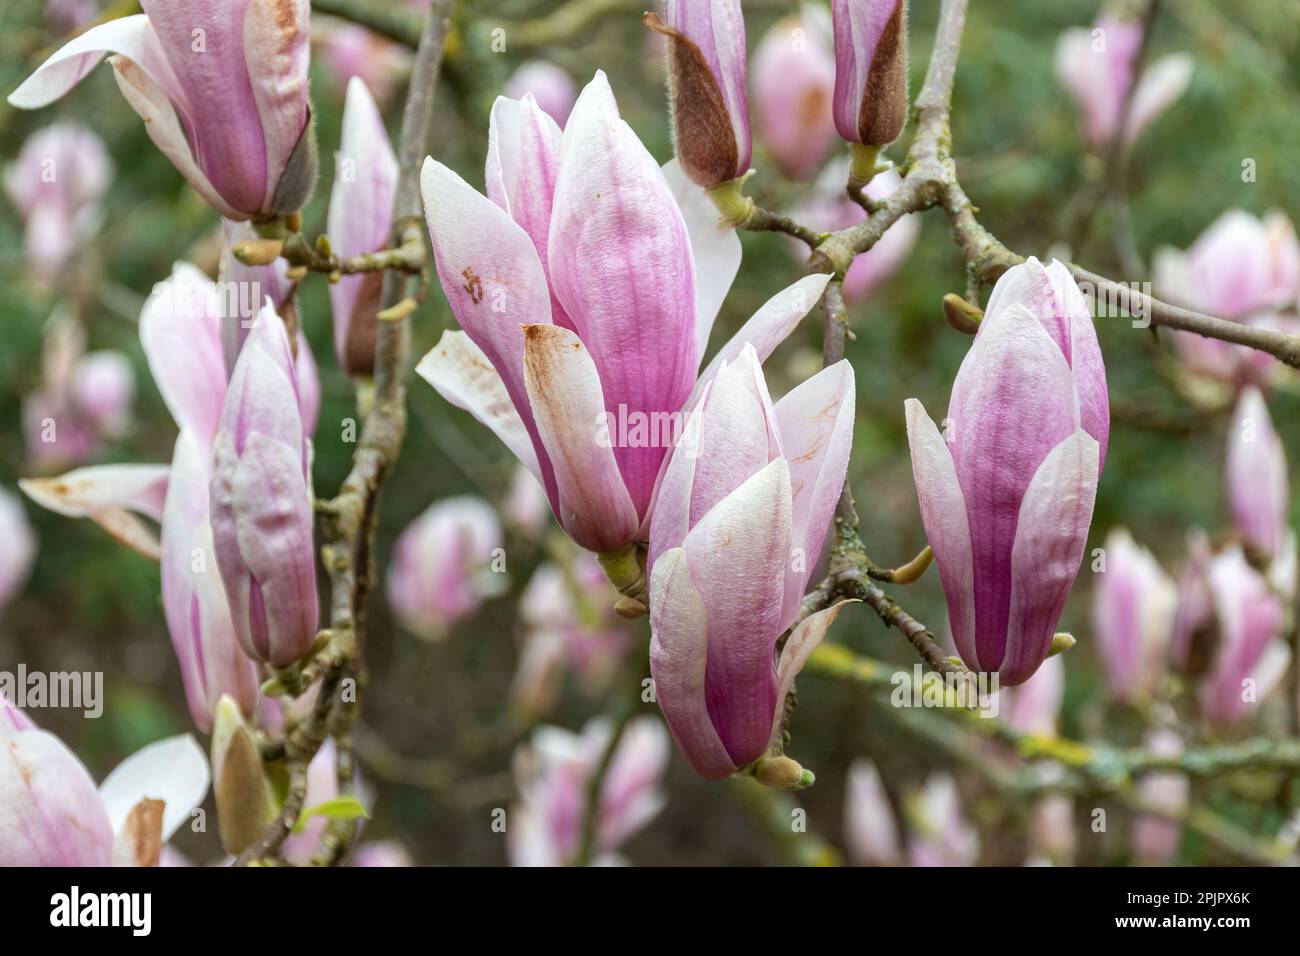 Rosafarbene Blüten oder Blüten auf Magnolia liiflora var. Gracilis Strauß oder Baum im April, Surrey, England, Großbritannien Stockfoto